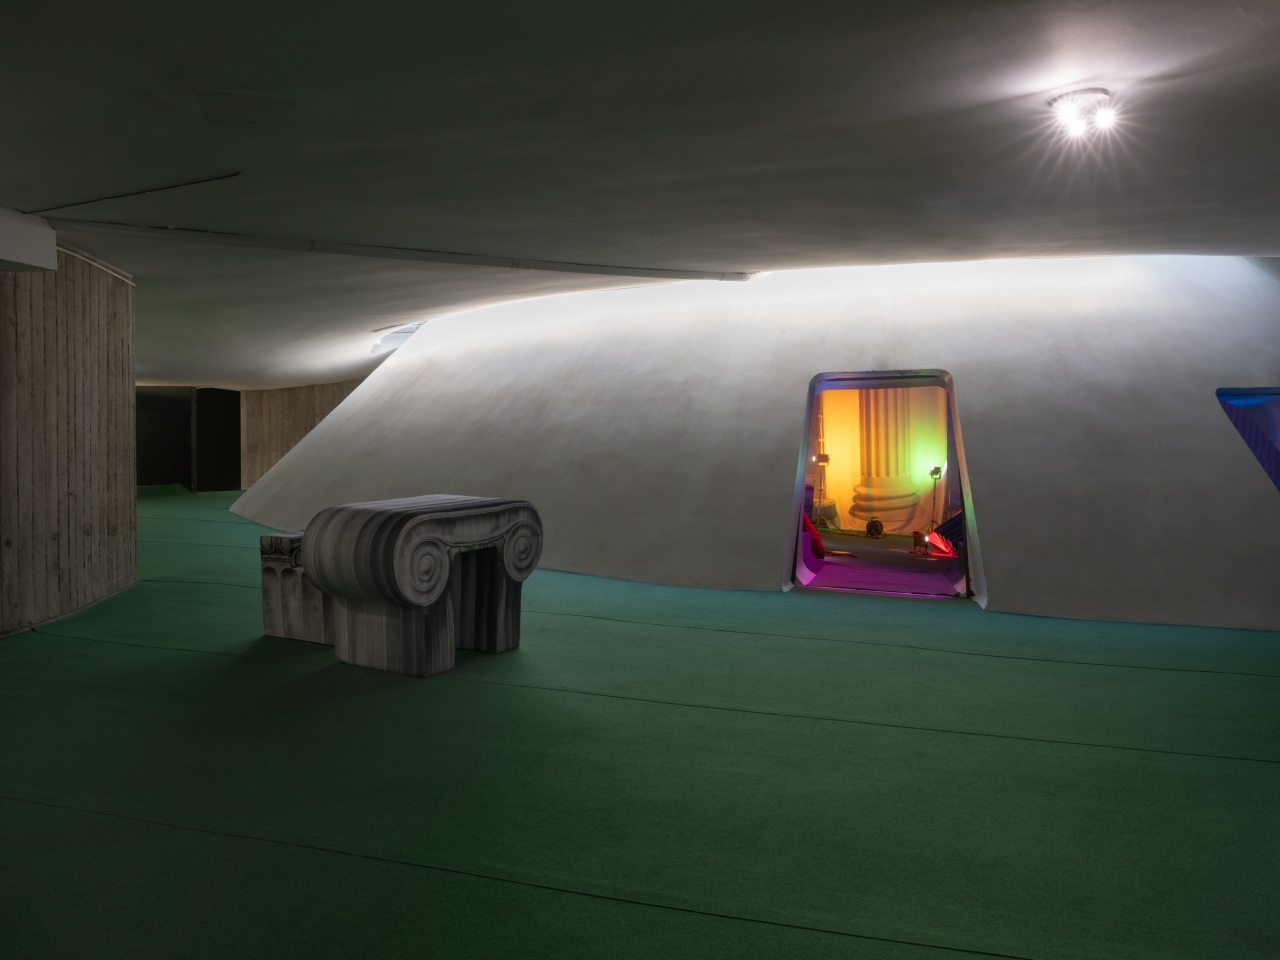 L'installation de l'artiste Andreas Angelidakis commissionnée par Audemars Piguet, à l'espace Niemeyer à Paris.